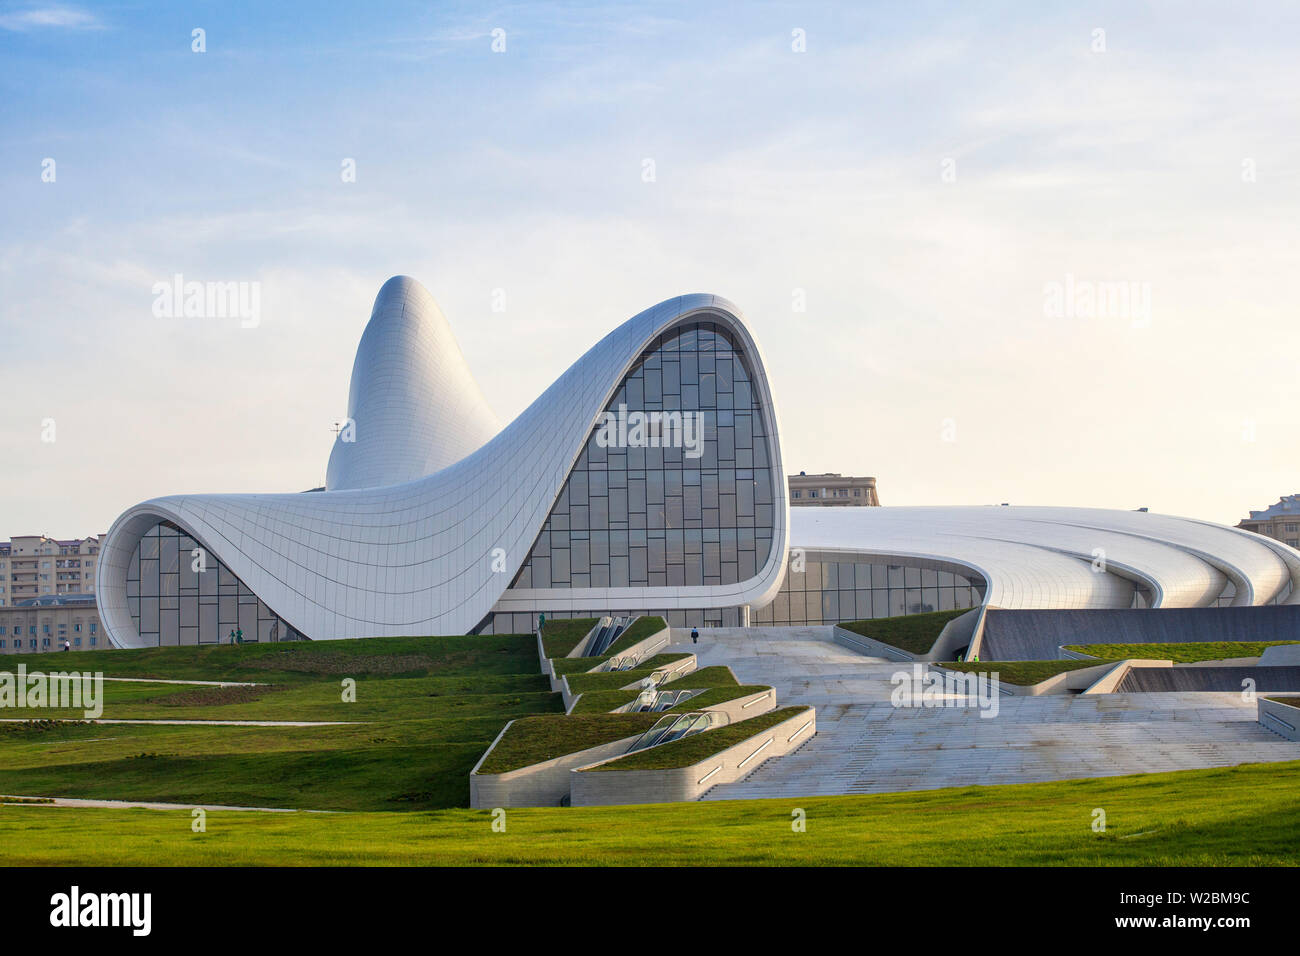 Azerbaigian, Baku, Heydar Aliyev Cultural Centre - una biblioteca, il Museo e il centro Congressi progettato da Iraqi-British architetto Zaha Hadid. Foto Stock